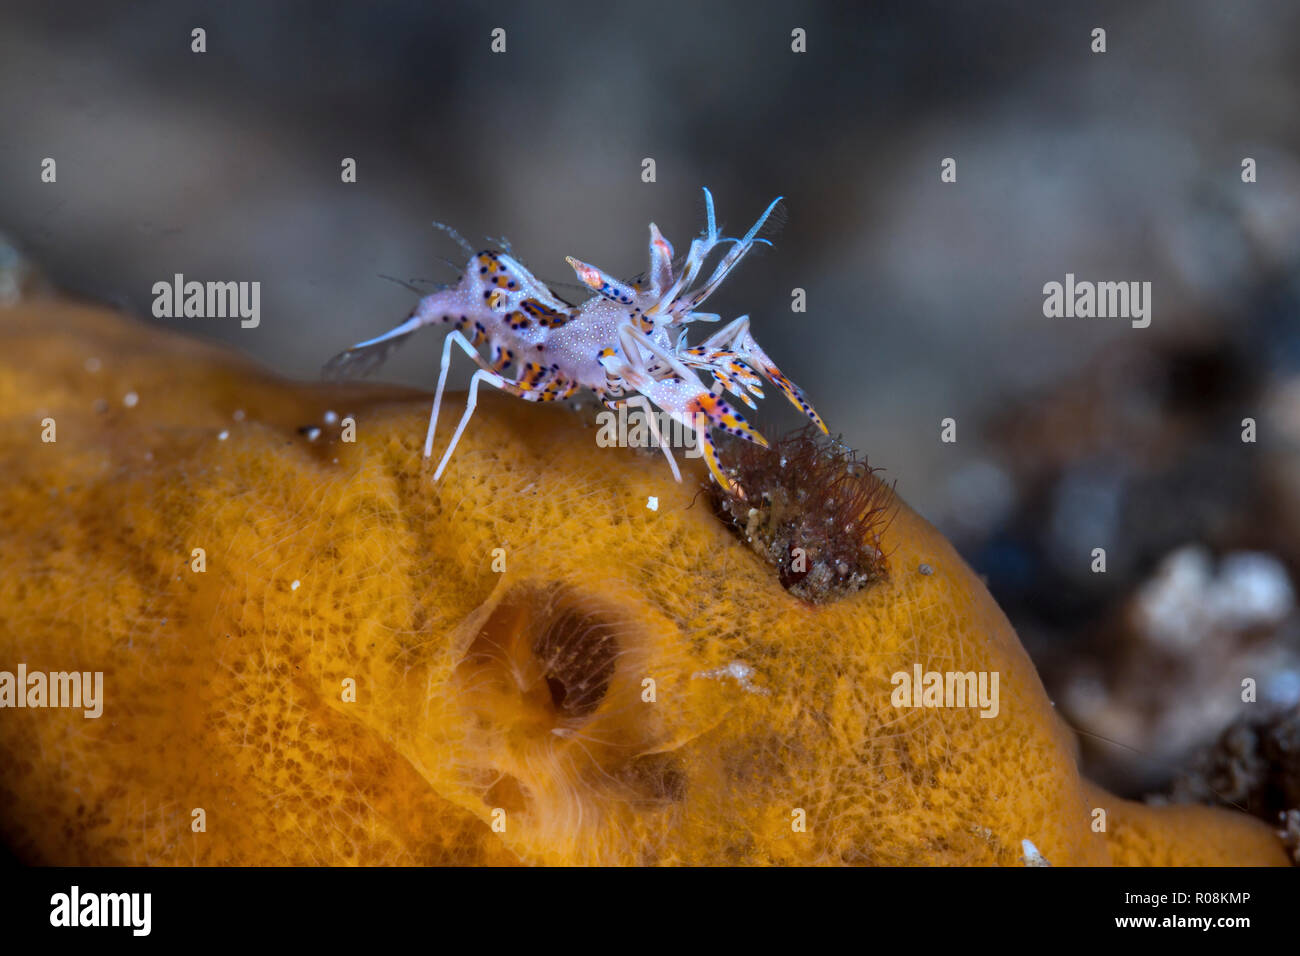 Crevettes tigrées épineuse qui se nourrissent de l'éponge orange sous l'eau. Détroit de Lembeh, Indonésie Banque D'Images